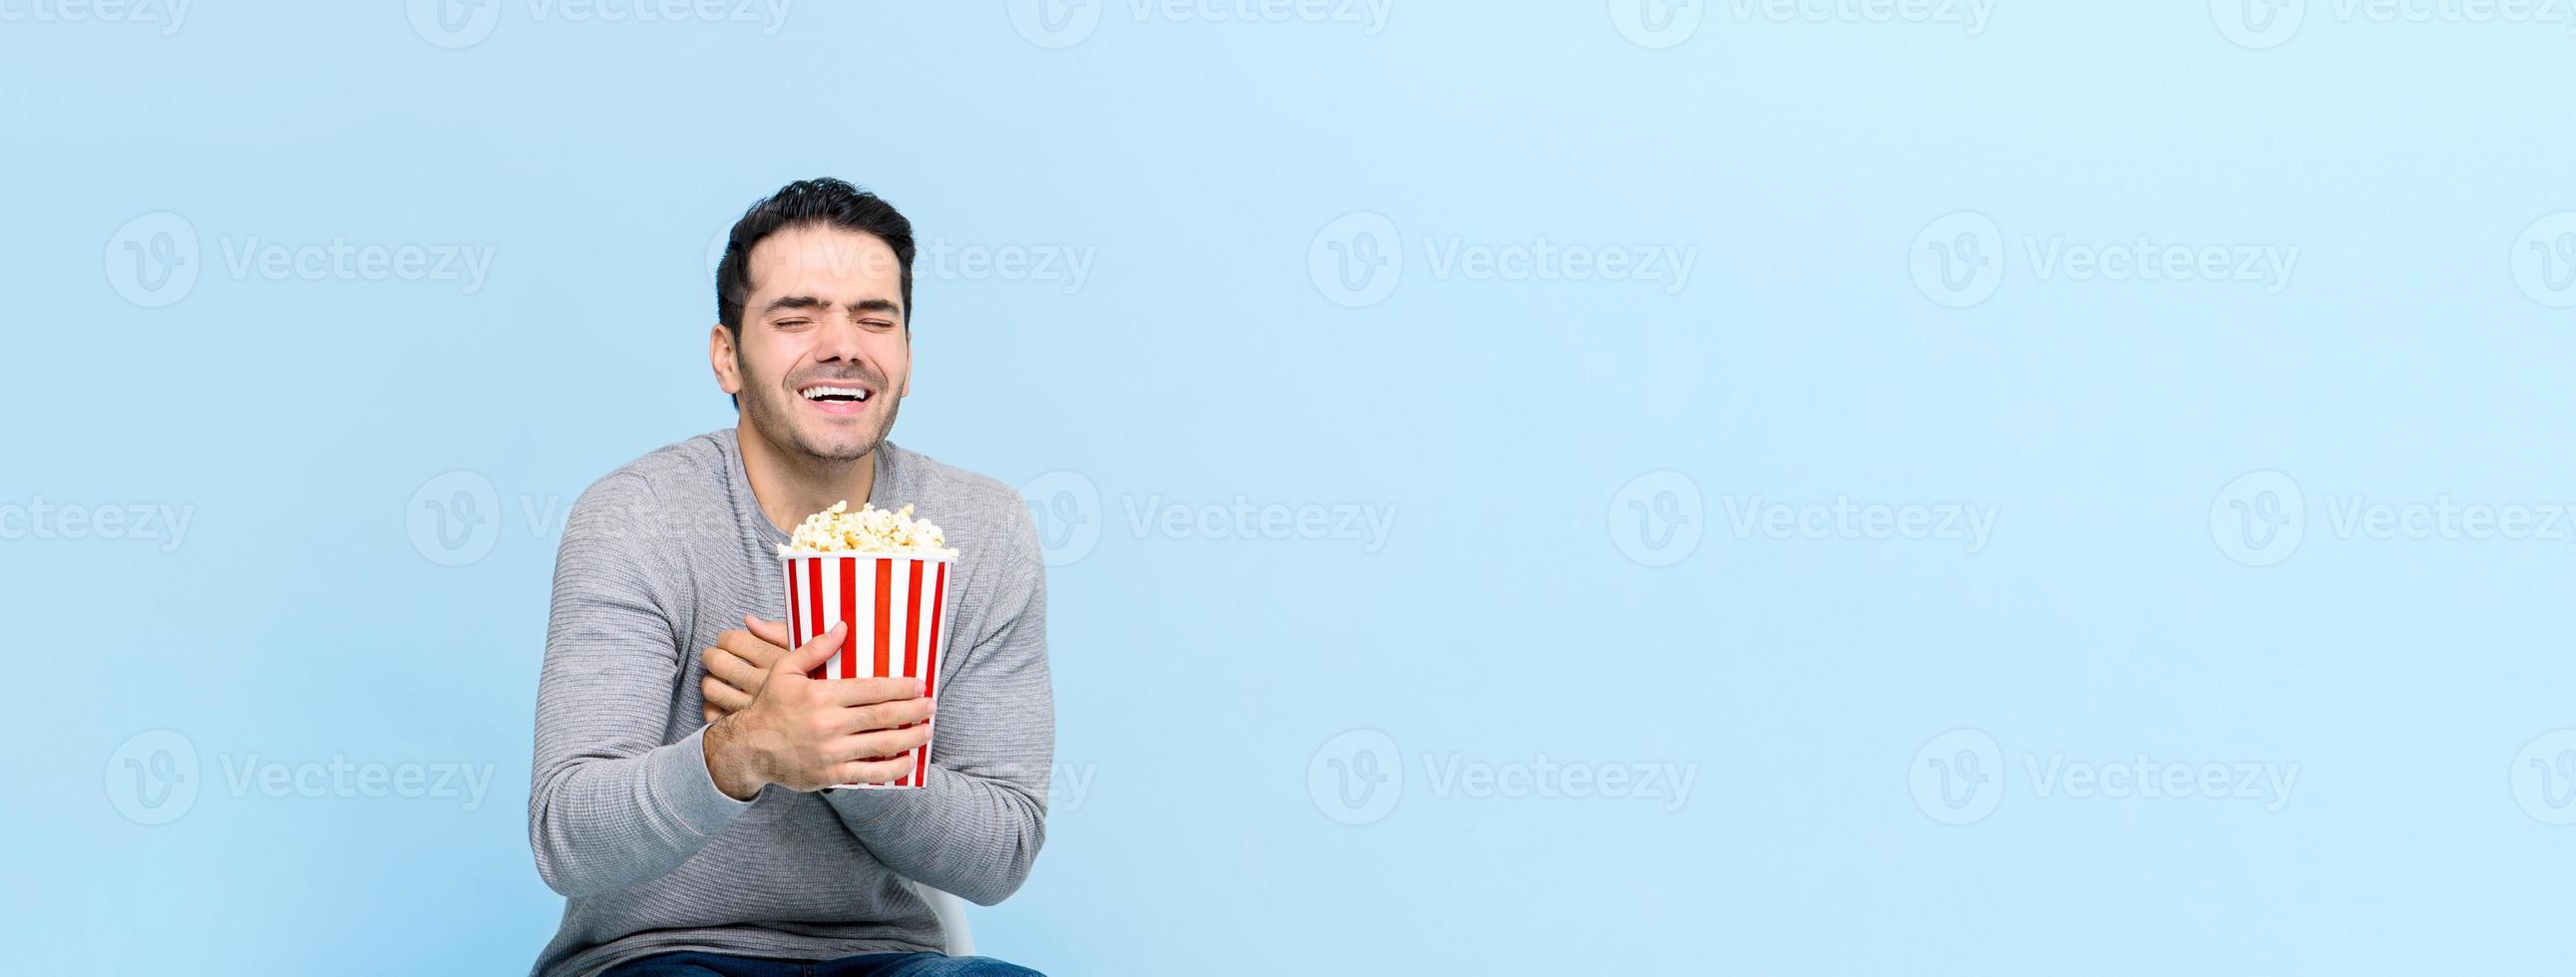 jovem segurando pipoca rindo enquanto assiste filme isolado no fundo do banner azul claro com espaço de cópia foto